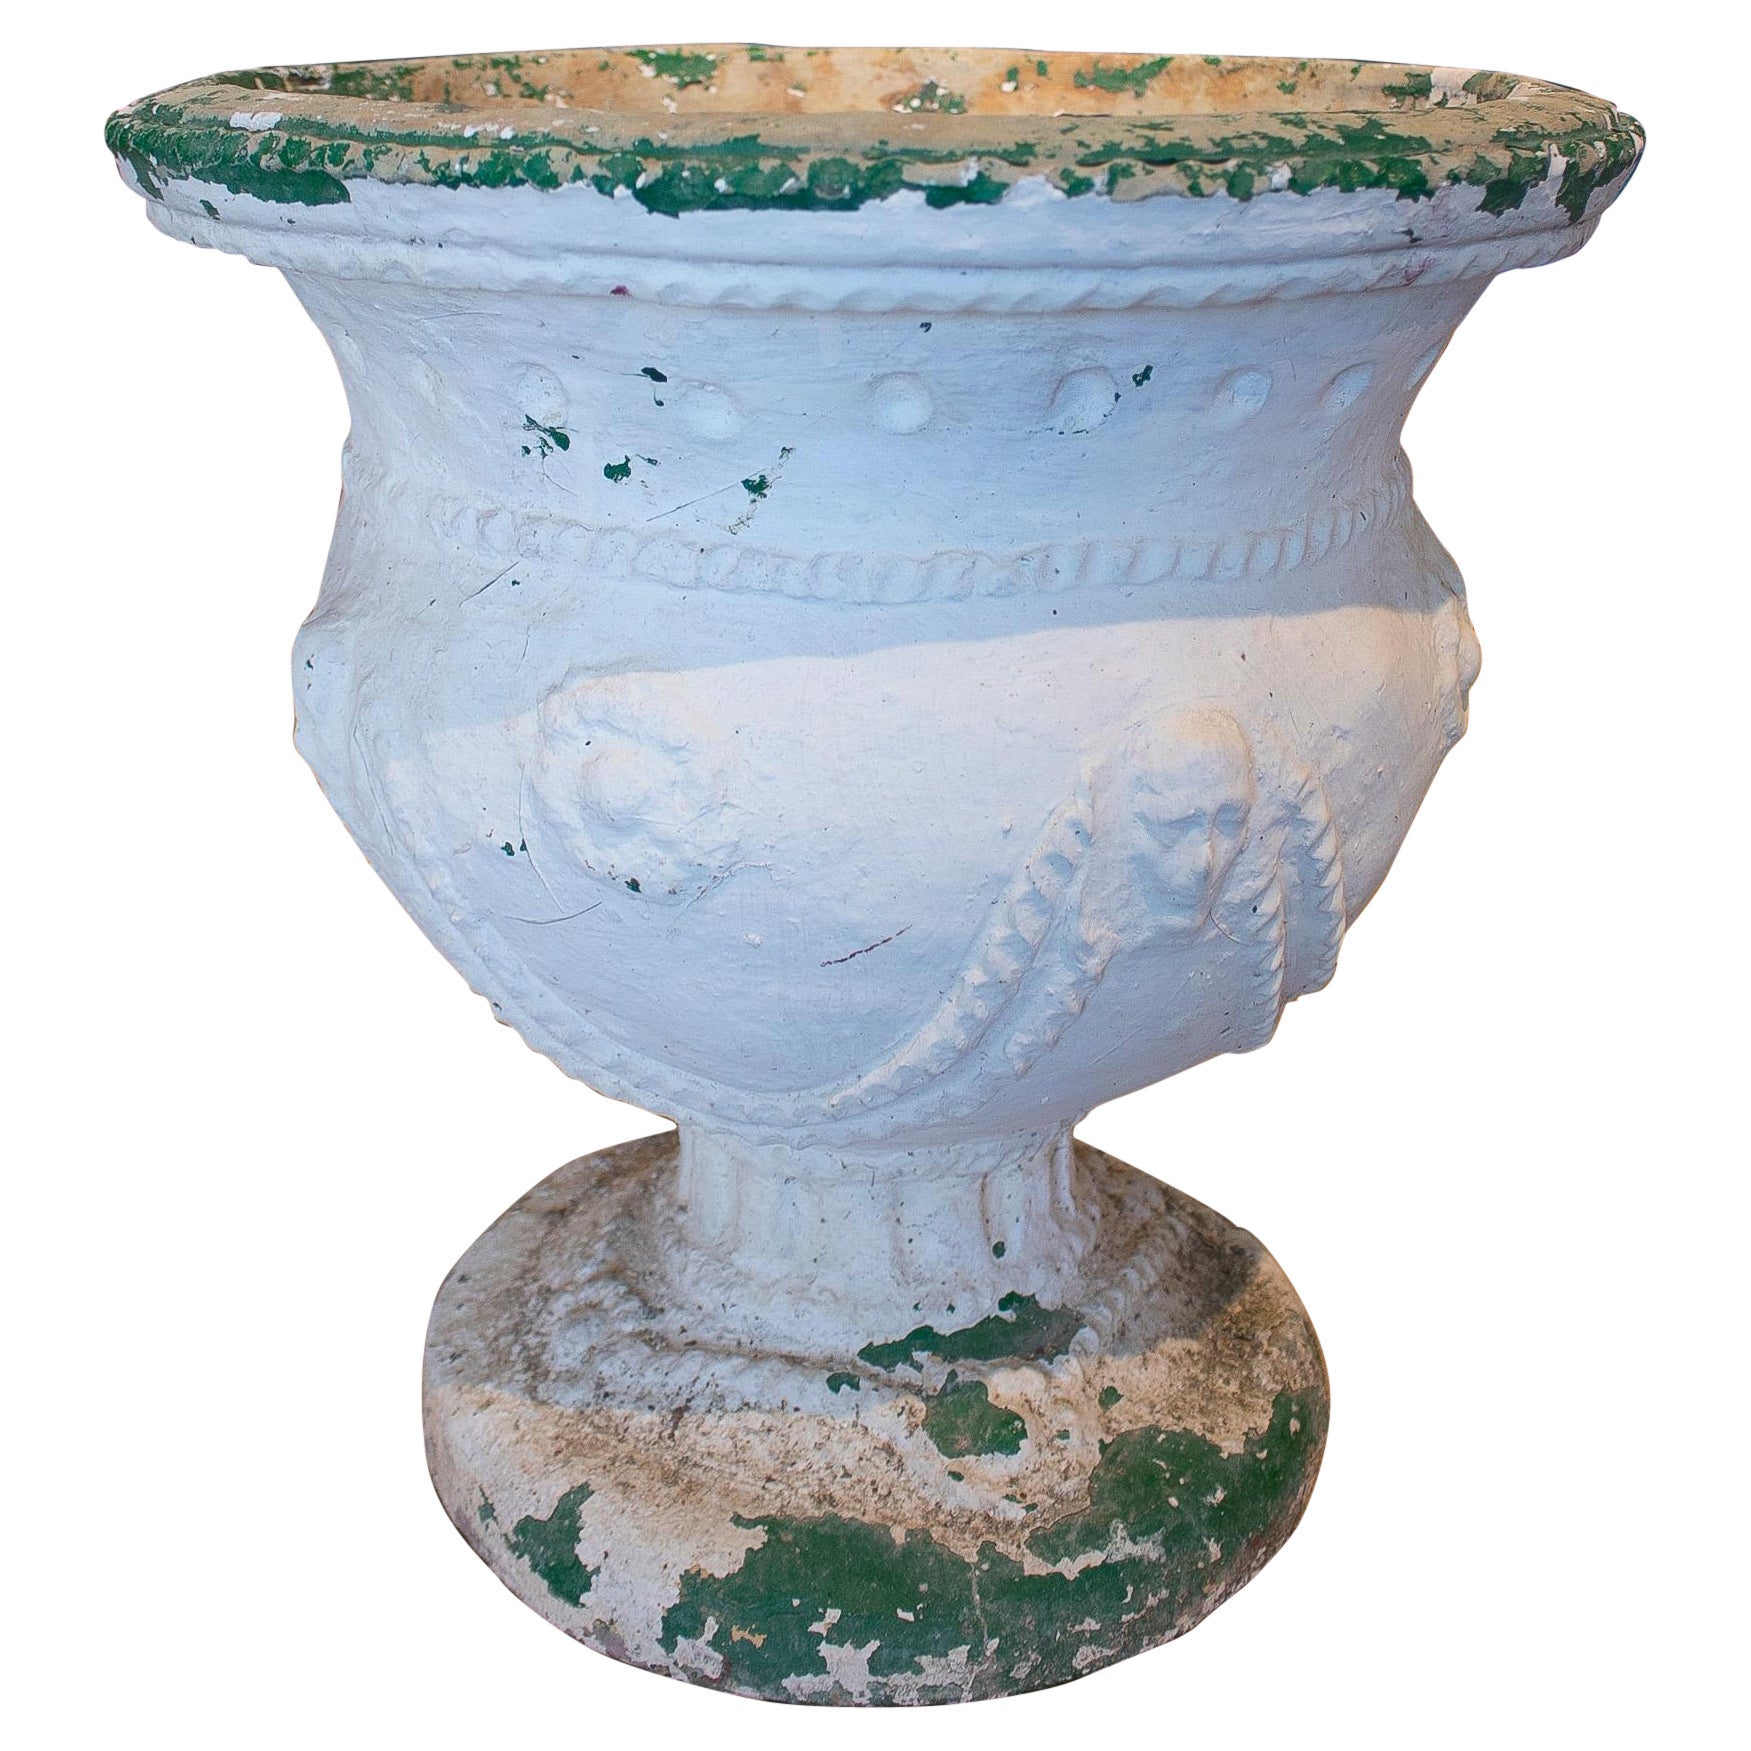 Spanische handgefertigte Keramik-Urnenvase aus dem 19. Jahrhundert, weiß getüncht